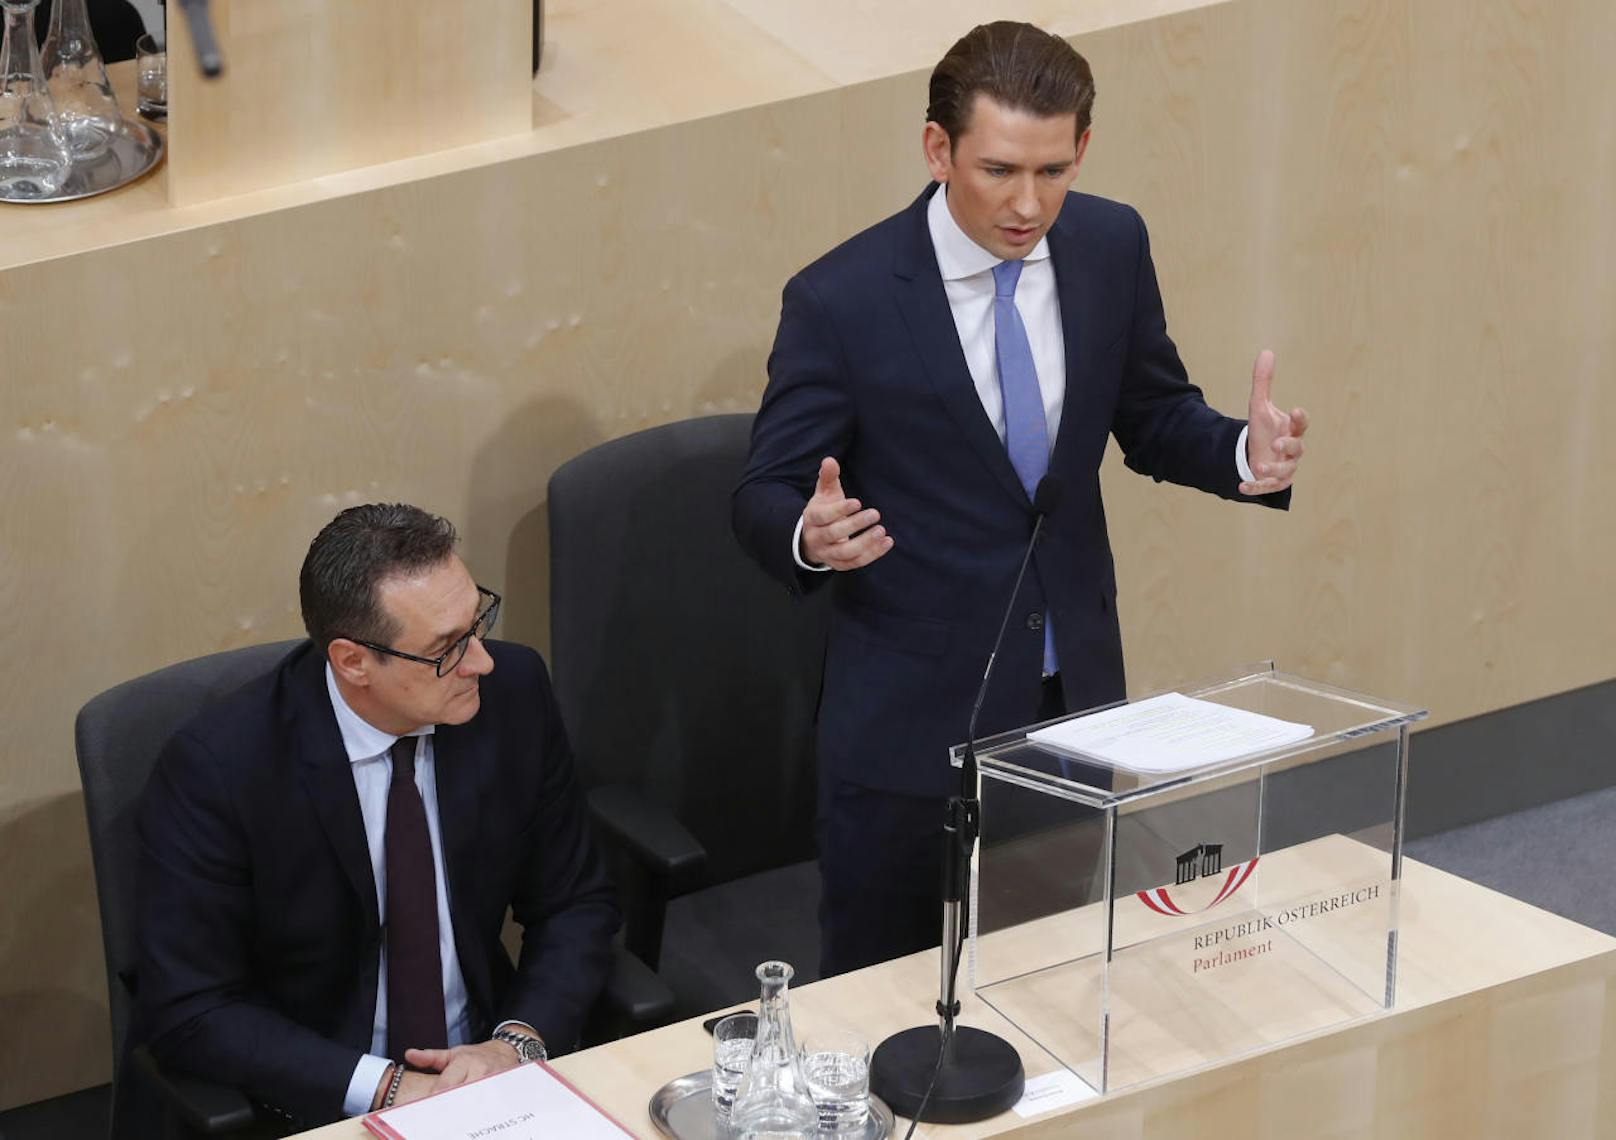 "Veränderung ist nichts, was sich aufhalten lässt", so eröffnete Bundeskanzler Sebastian Kurz (ÖVP) am Mittwochnachmittag seine Rede im Parlament, bevor er konkreter auf die geplanten Vorhaben einging.